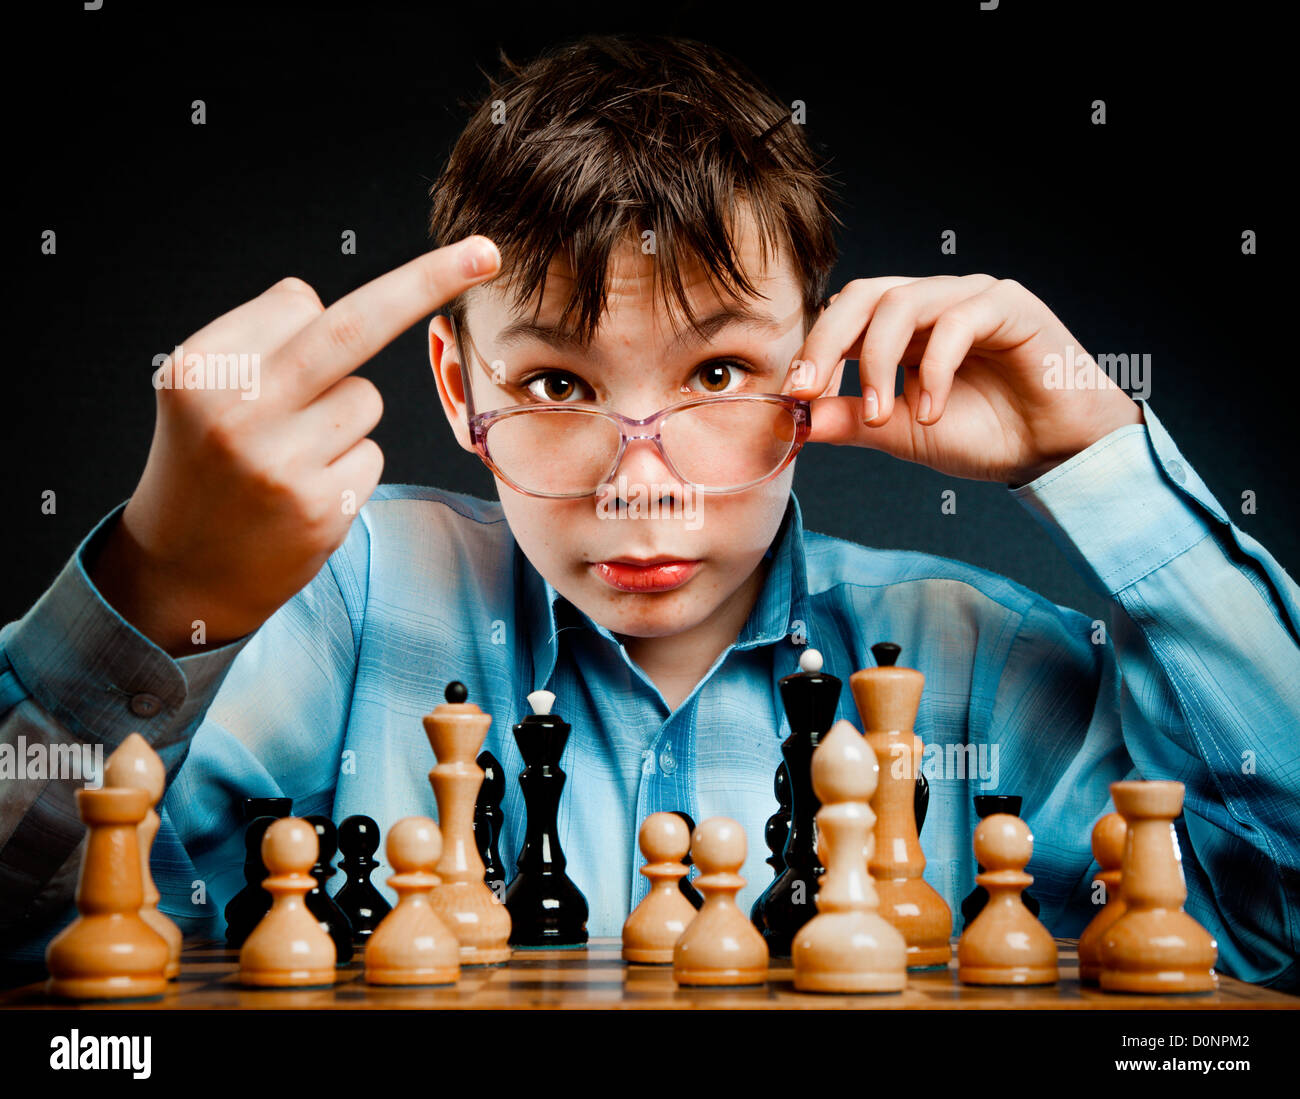 Nerd play chess Stock Photo